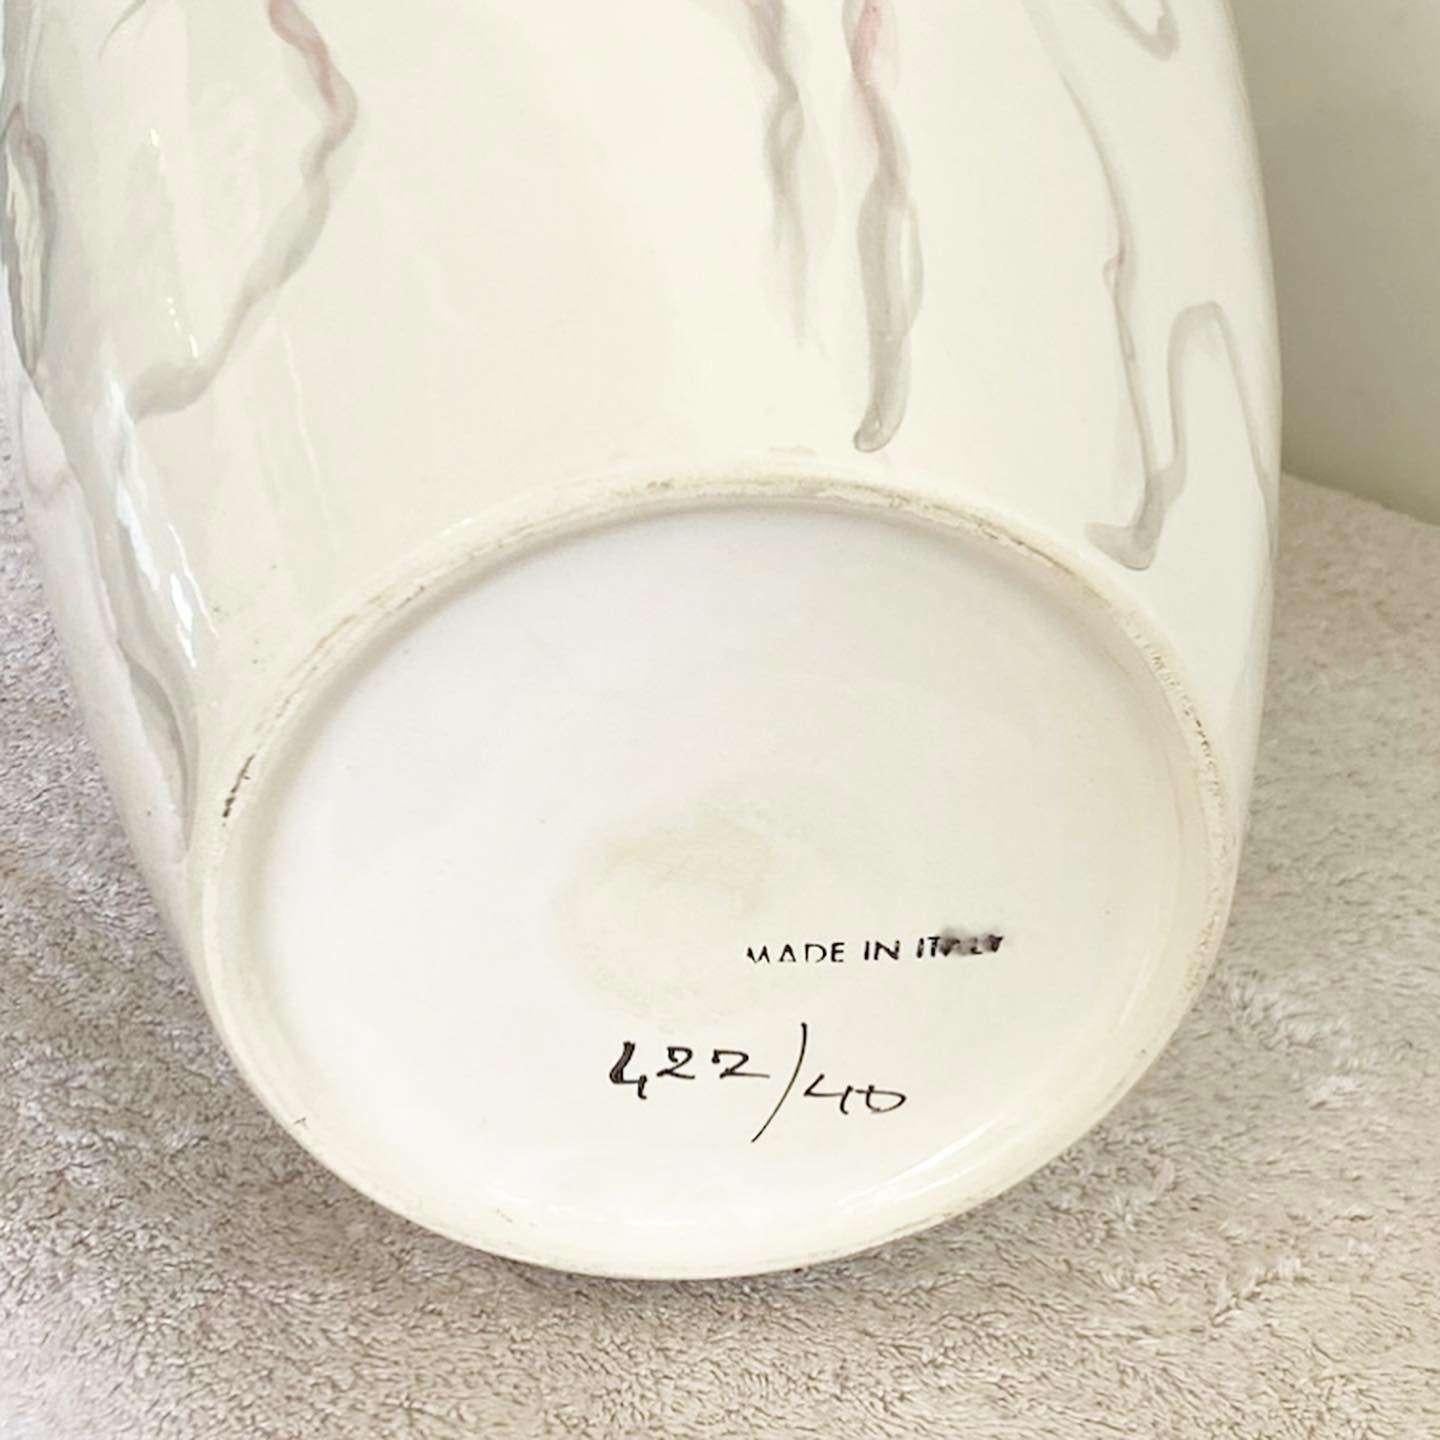 Wunderschöne postmoderne Vintage-Vase aus Keramik, hergestellt in Italien. Mit cremefarbener, glänzender Oberfläche und lila, blau-rosa Streifen auf der Oberfläche.
